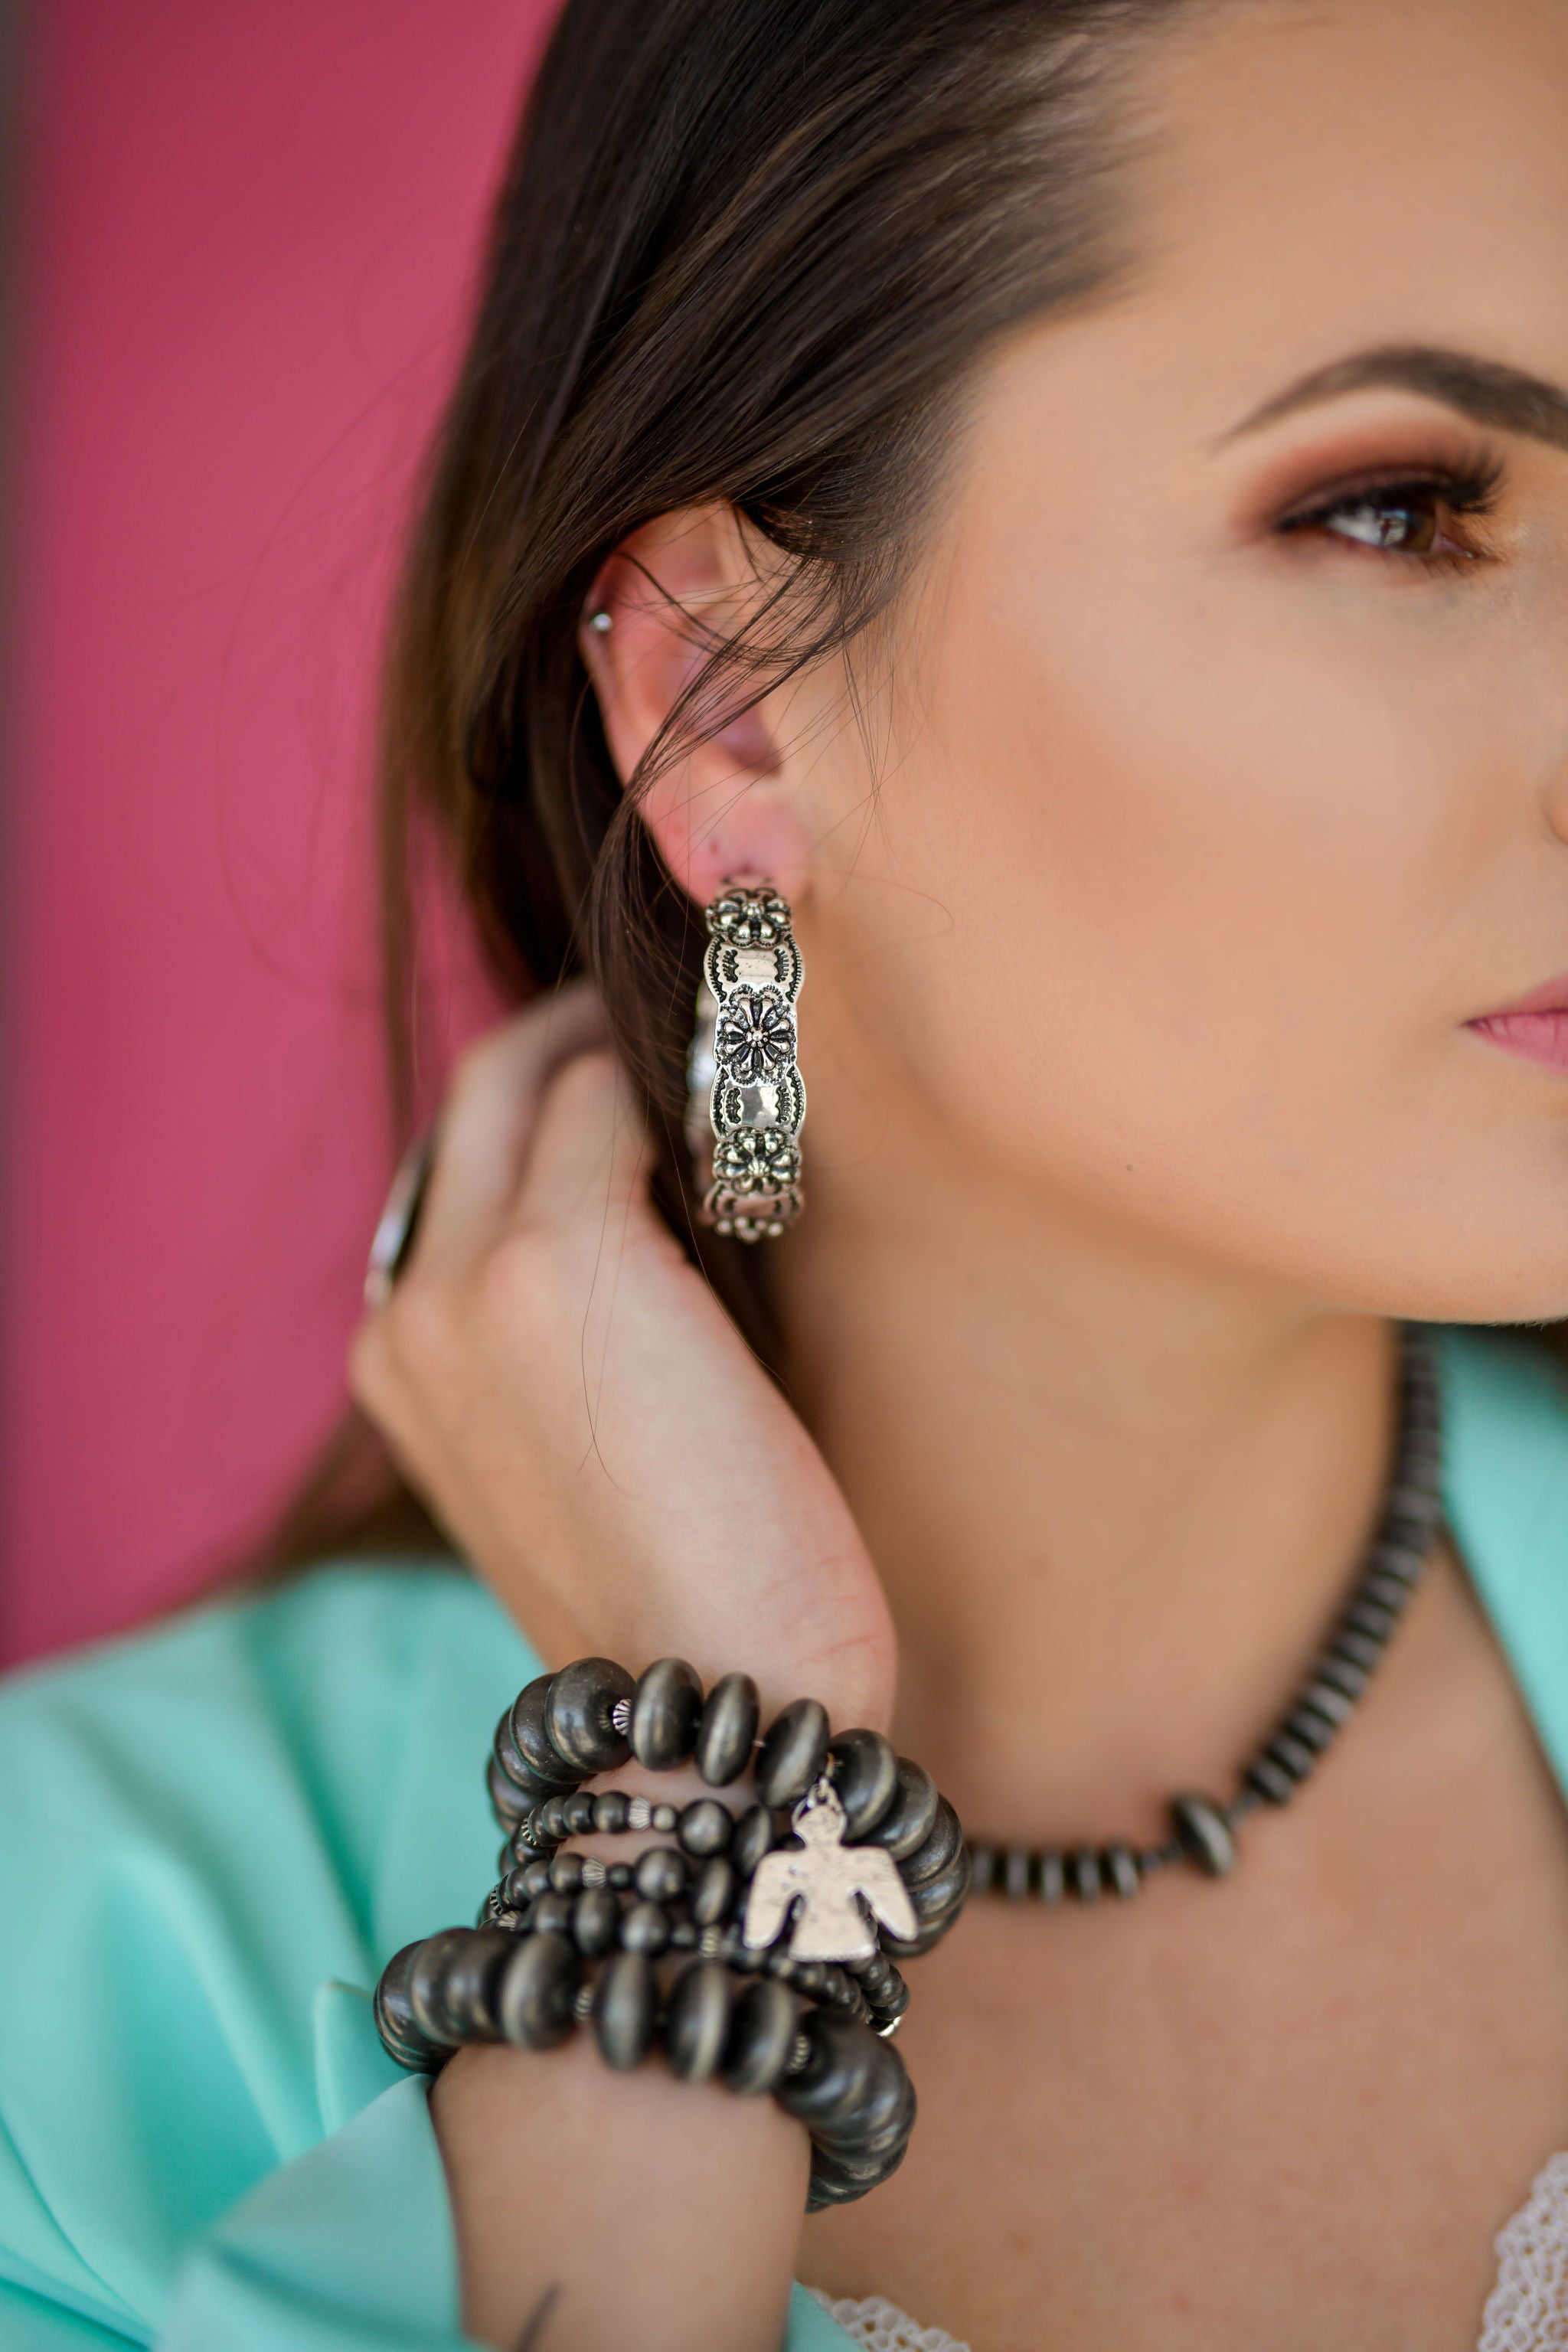 The Belle earrings